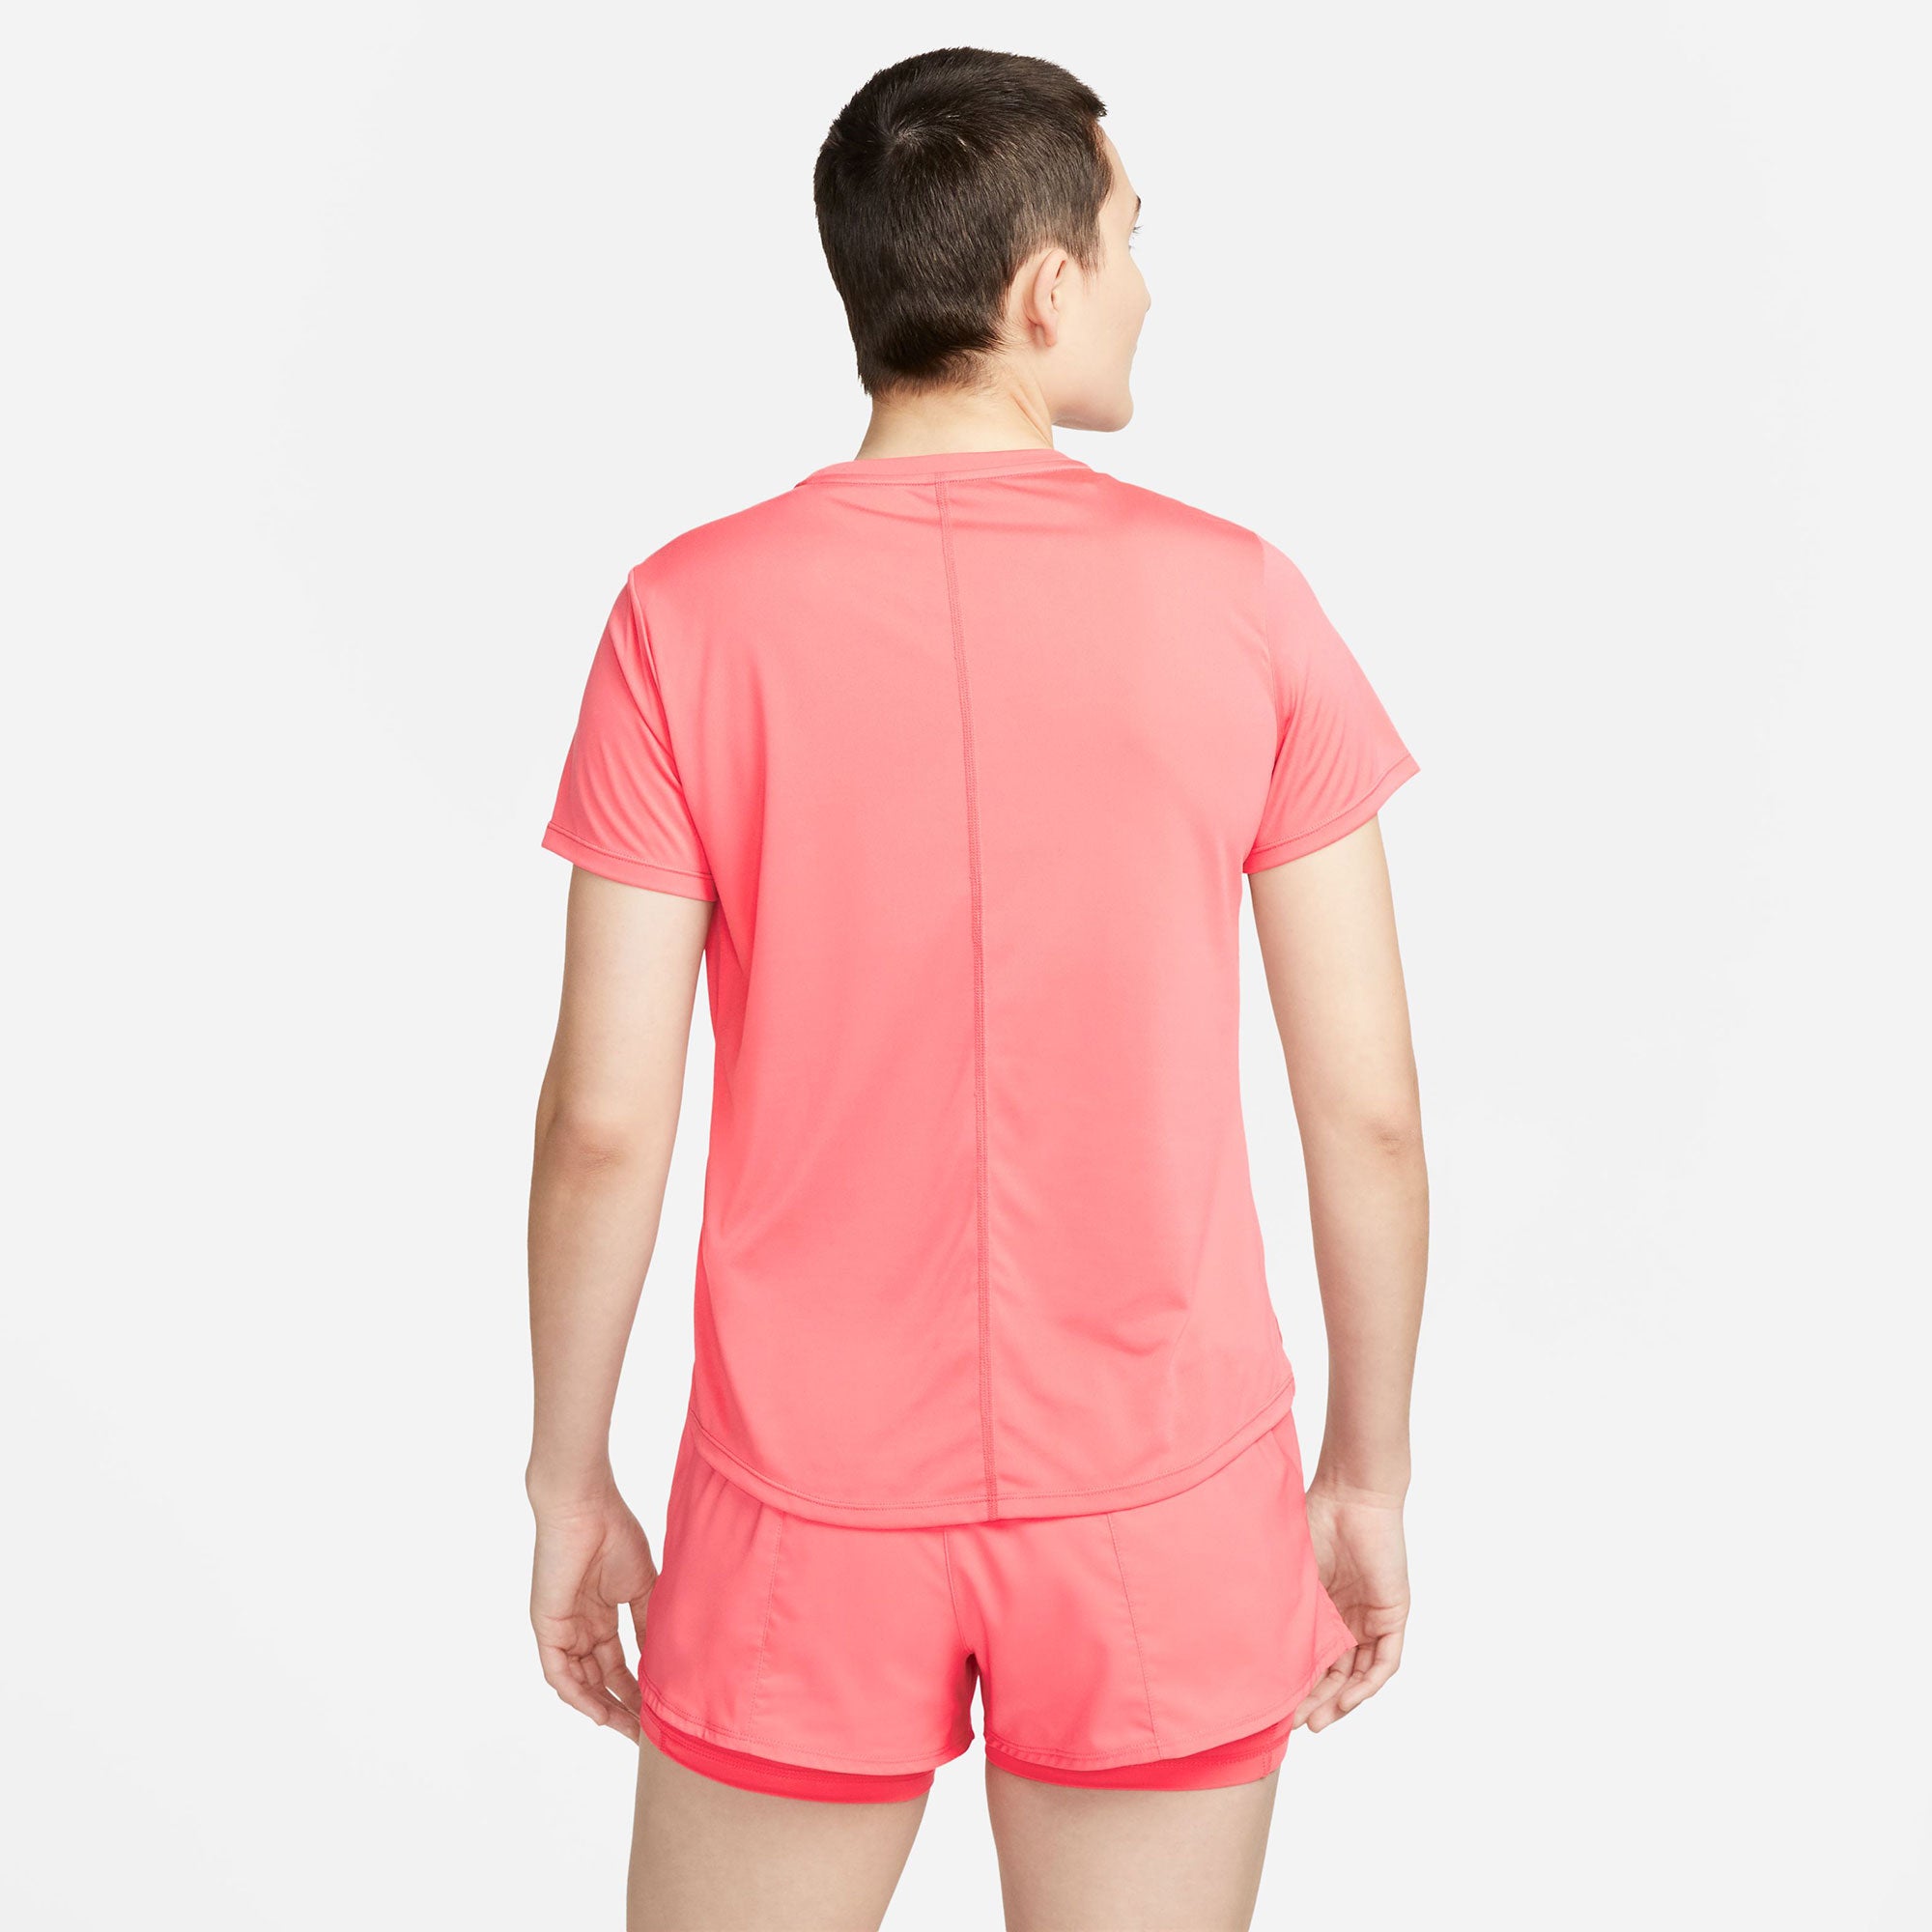 Nike One Dri-FIT Women's Standard Fit Shirt Orange (2)